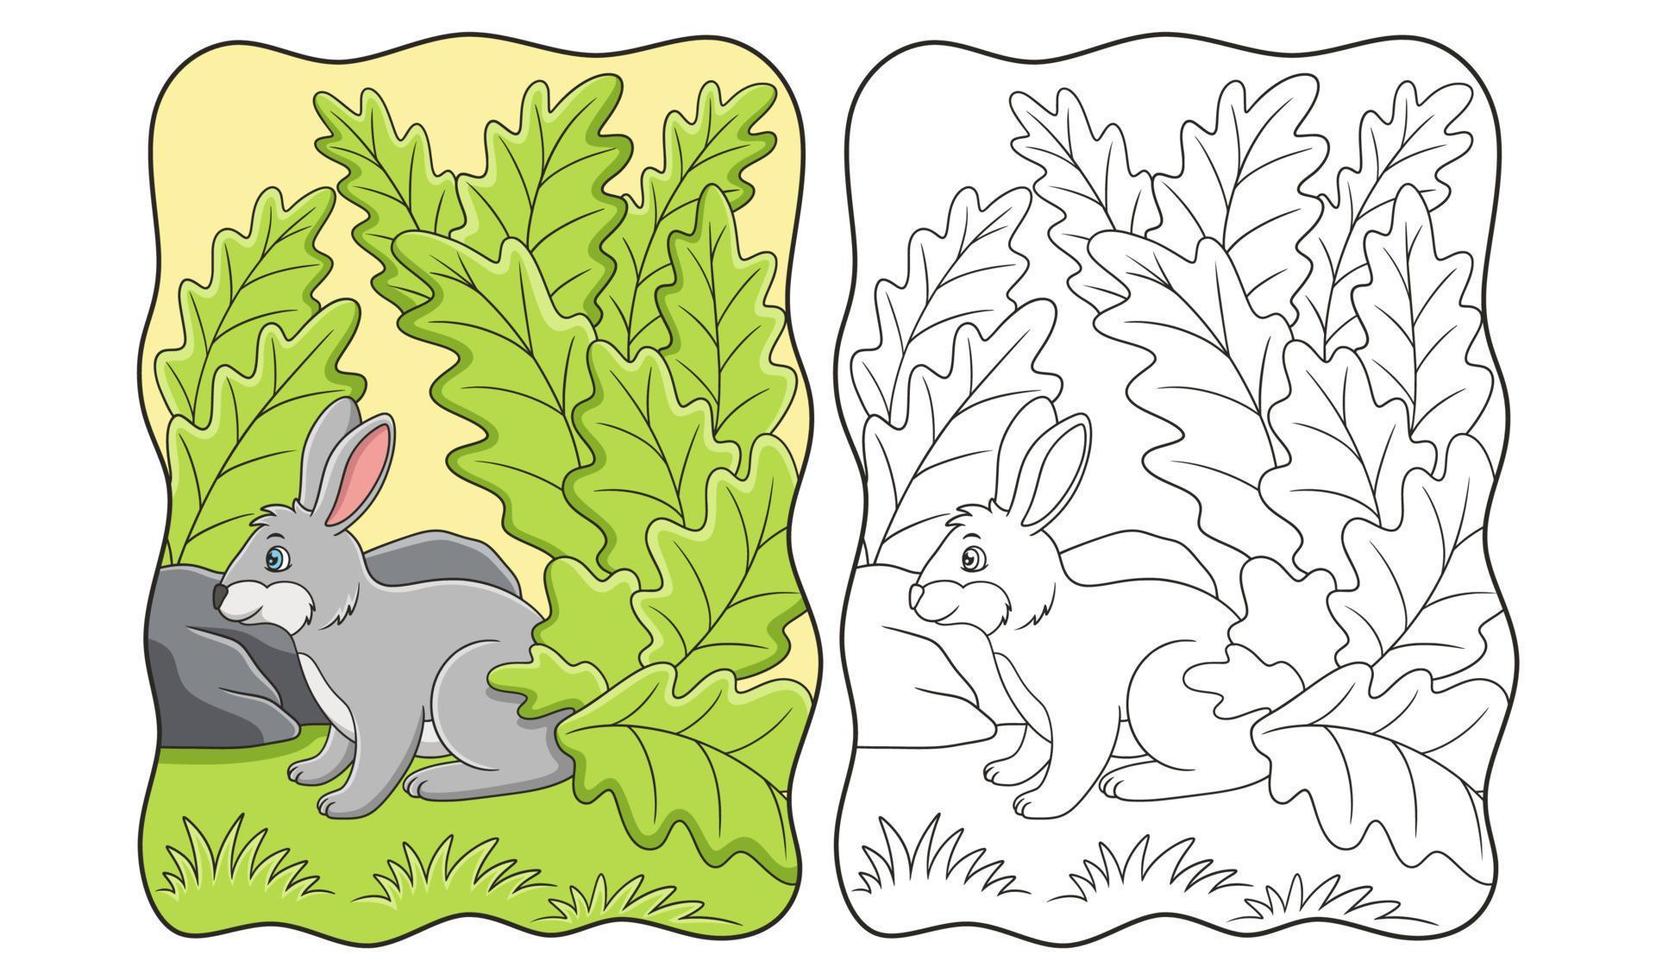 ilustración de dibujos animados conejos que buscan comida y refugio bajo las hojas de un árbol grande debido al sol caliente libro o página para niños vector